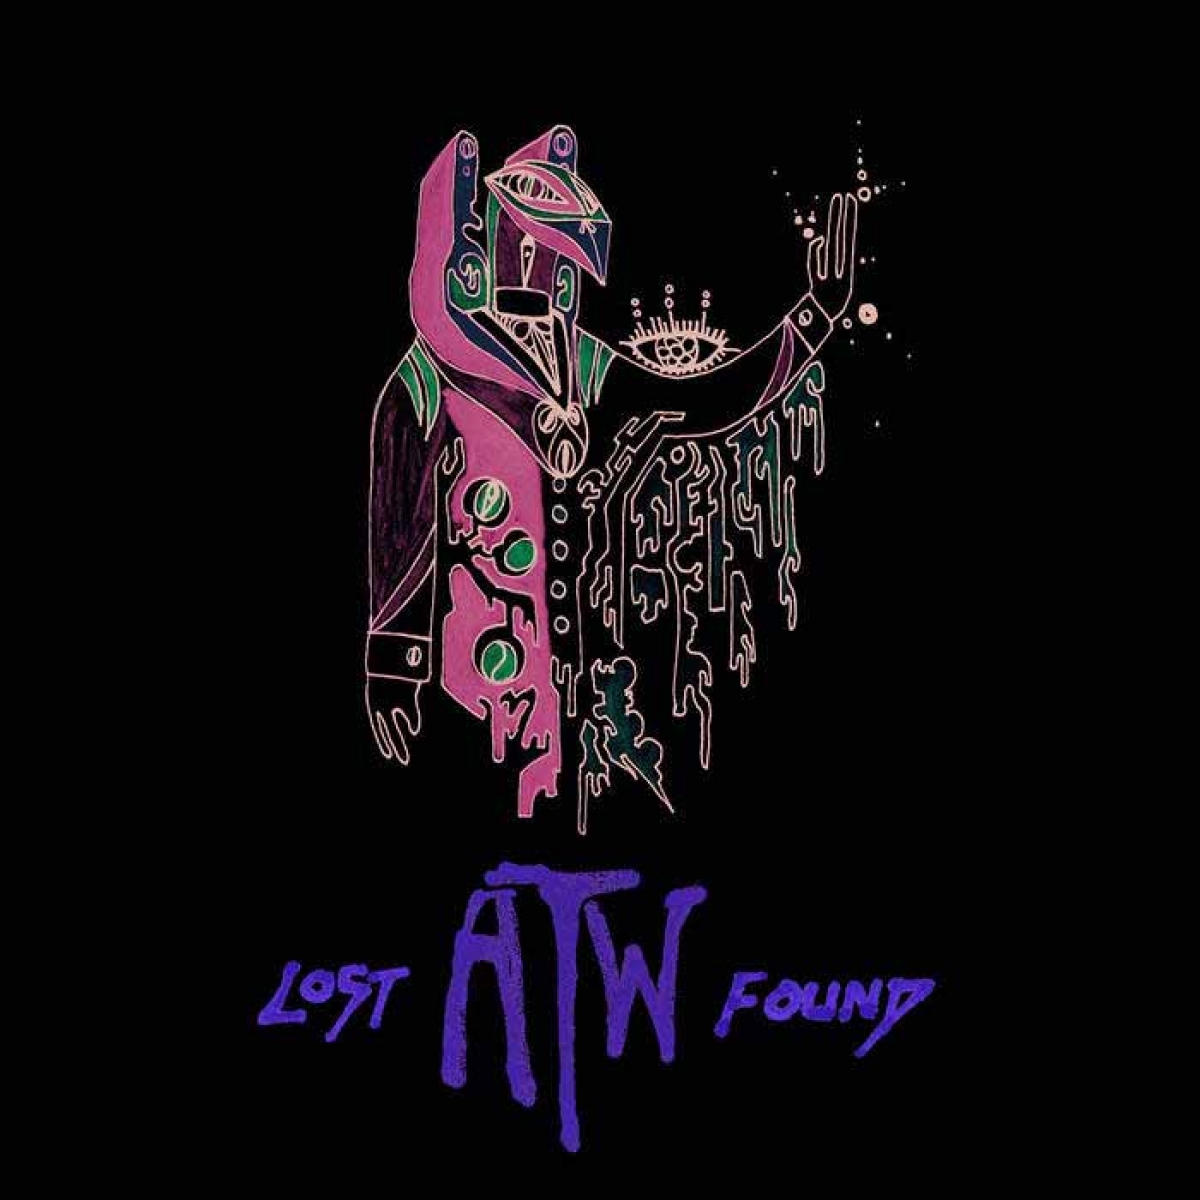 Κυκλοφορία-έκπληξη των All Them Witches. Δωρεάν το νέο EP τους, Lost And Found